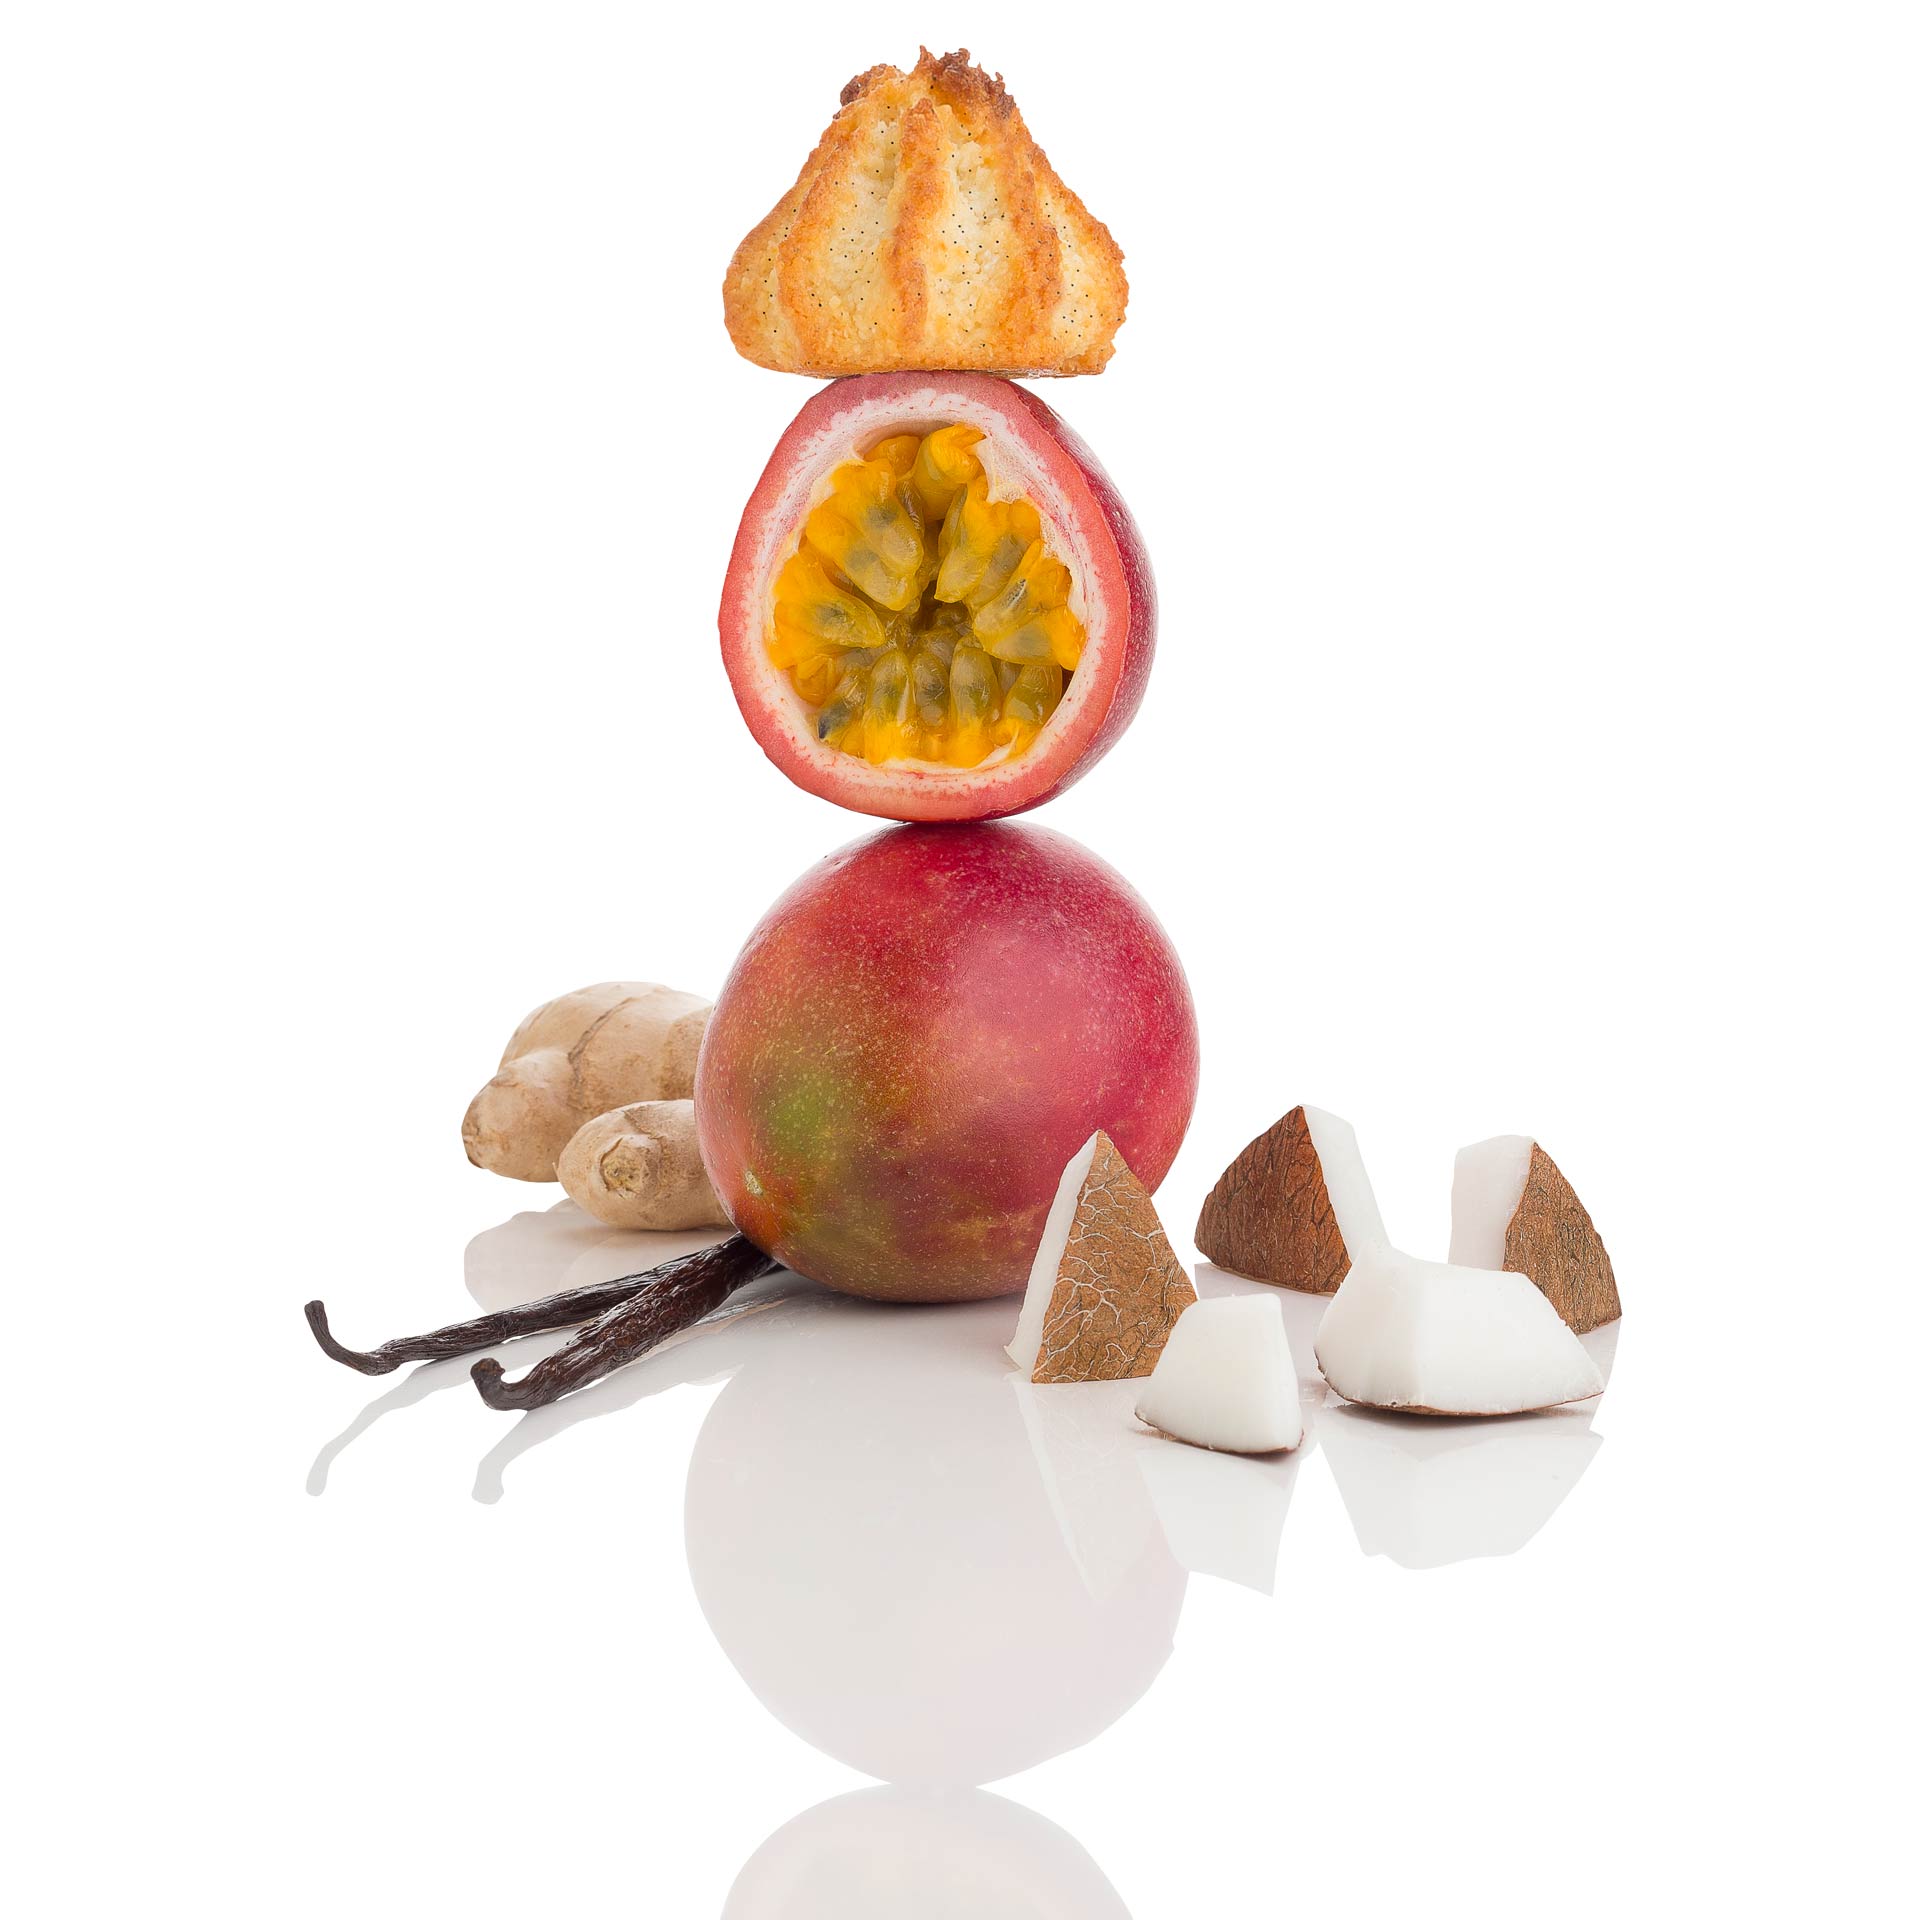 Macaron passion coco gingembre vanille - Prise de vue réalisée en studio photo professionnel à Strasbourg